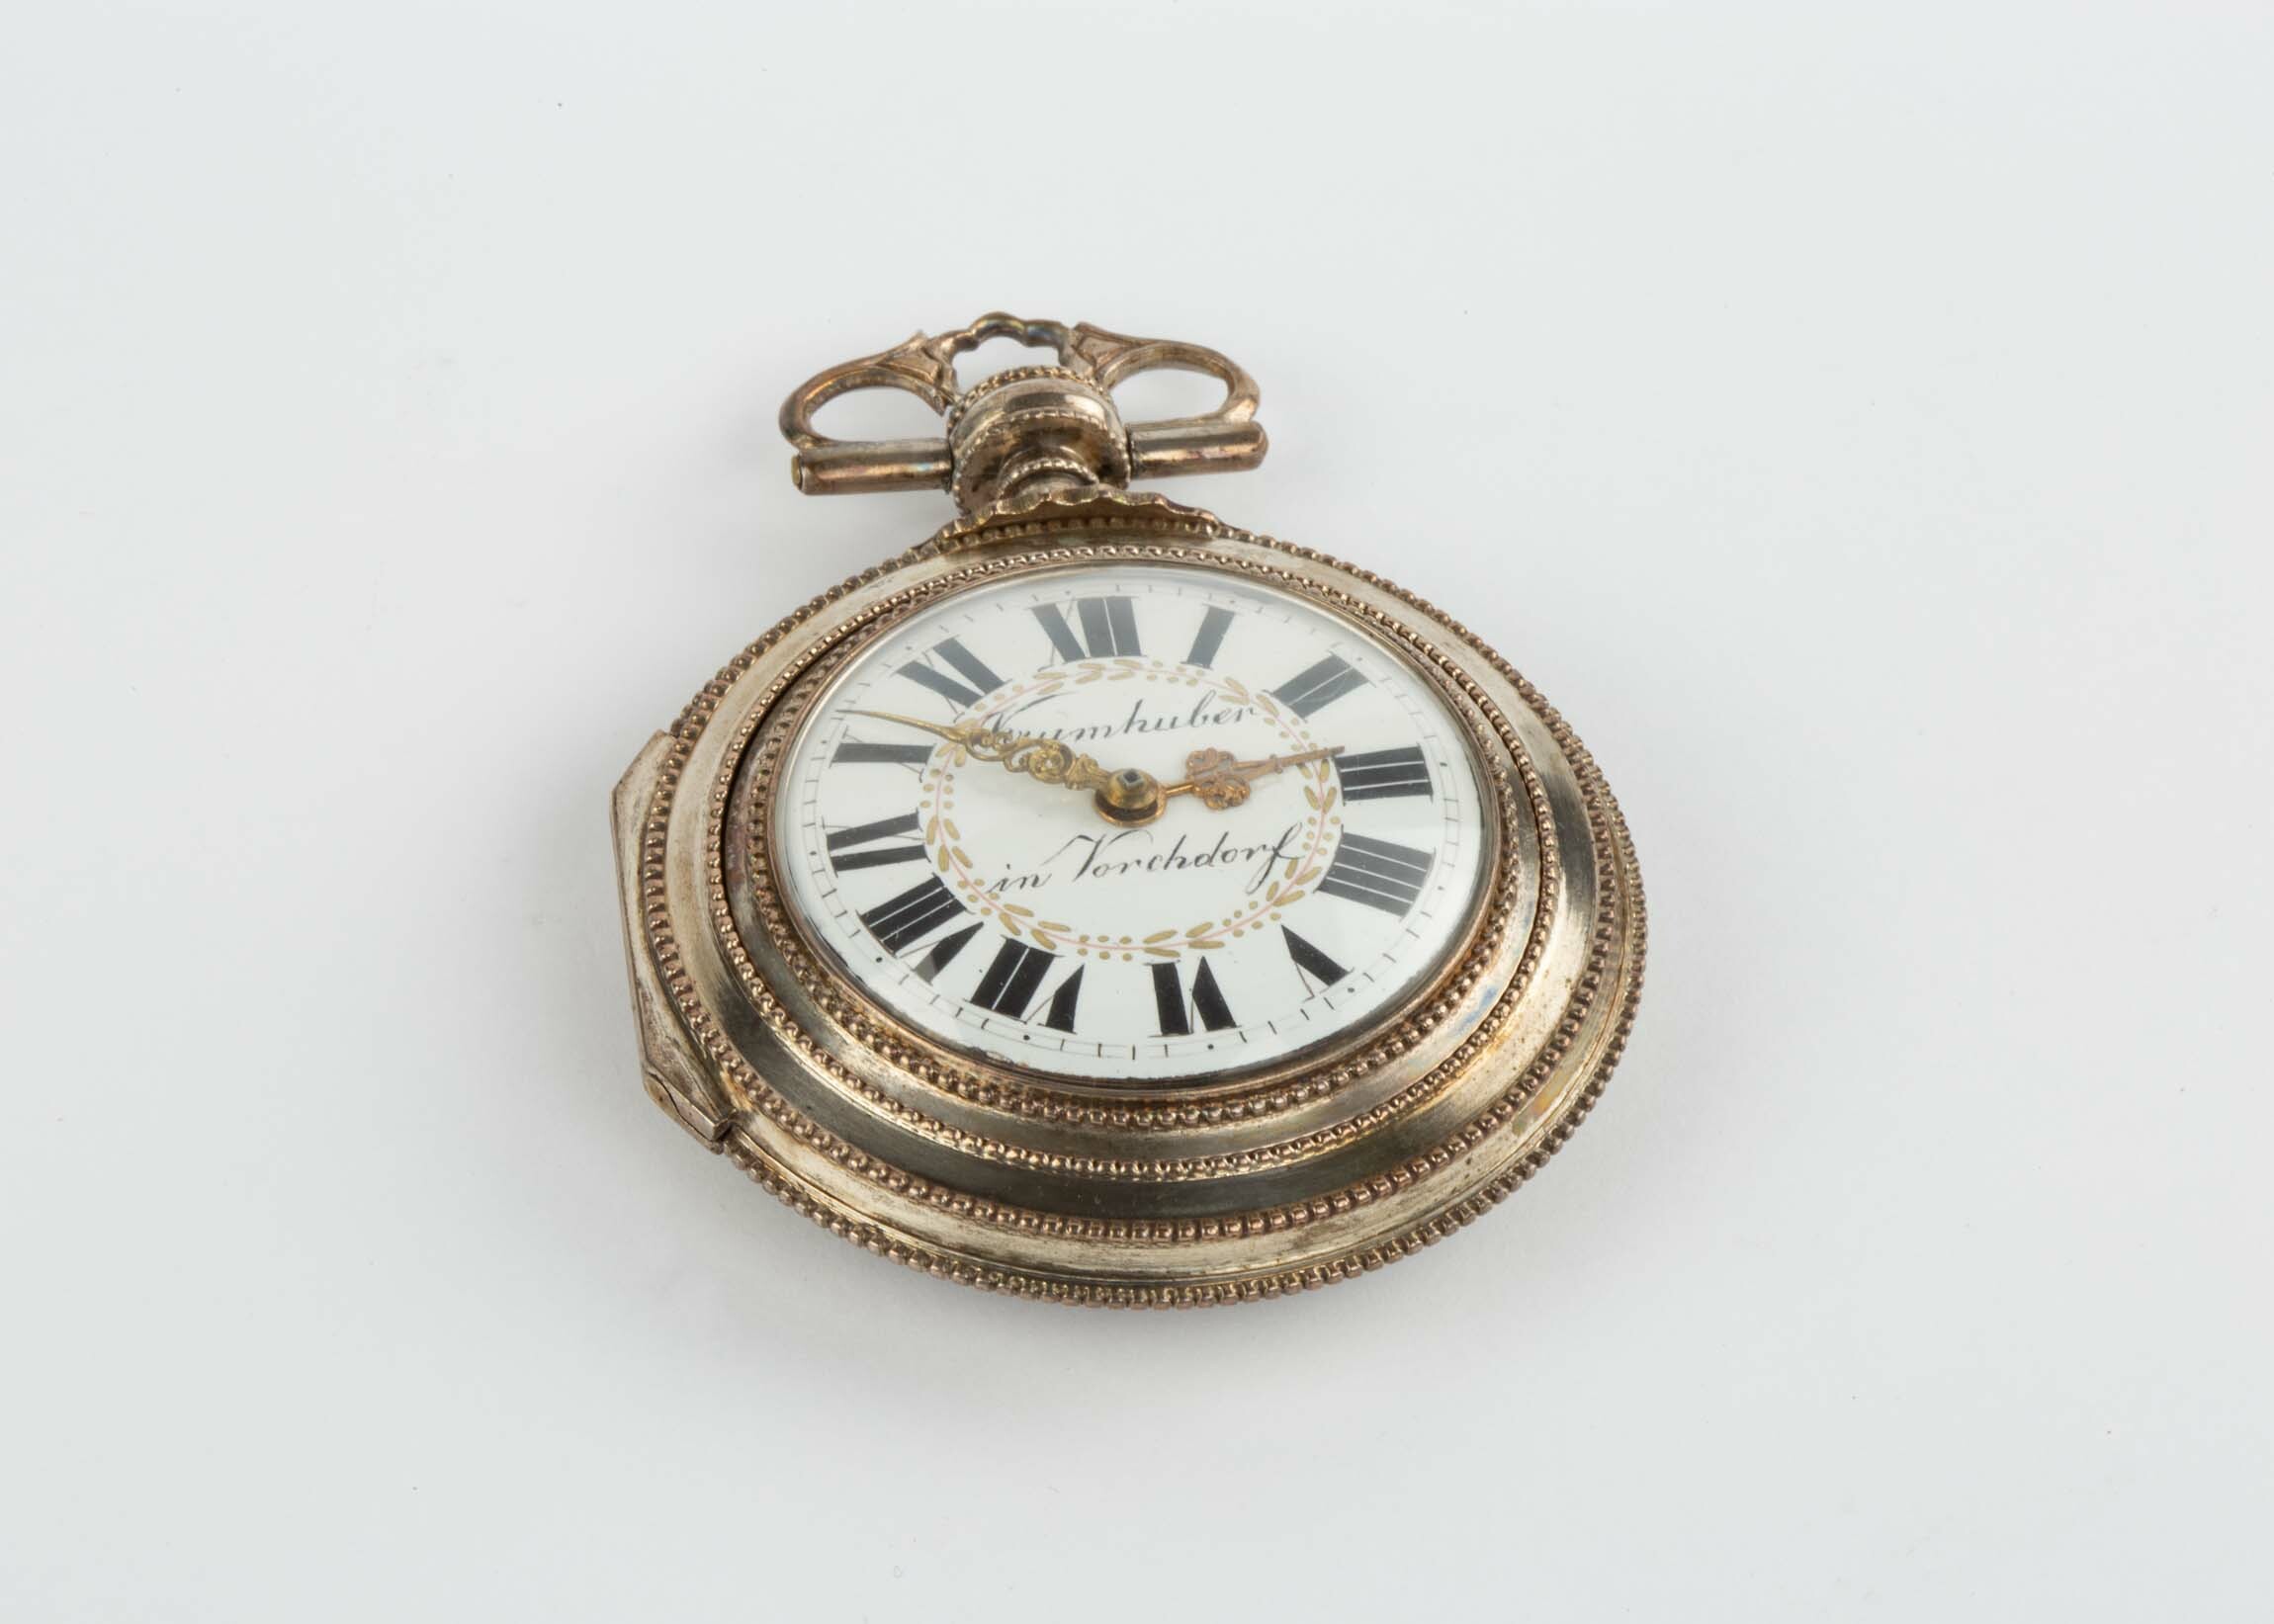 Taschenuhr, Krumhuber, Vorchdorf, um 1800 (Deutsches Uhrenmuseum CC BY-SA)